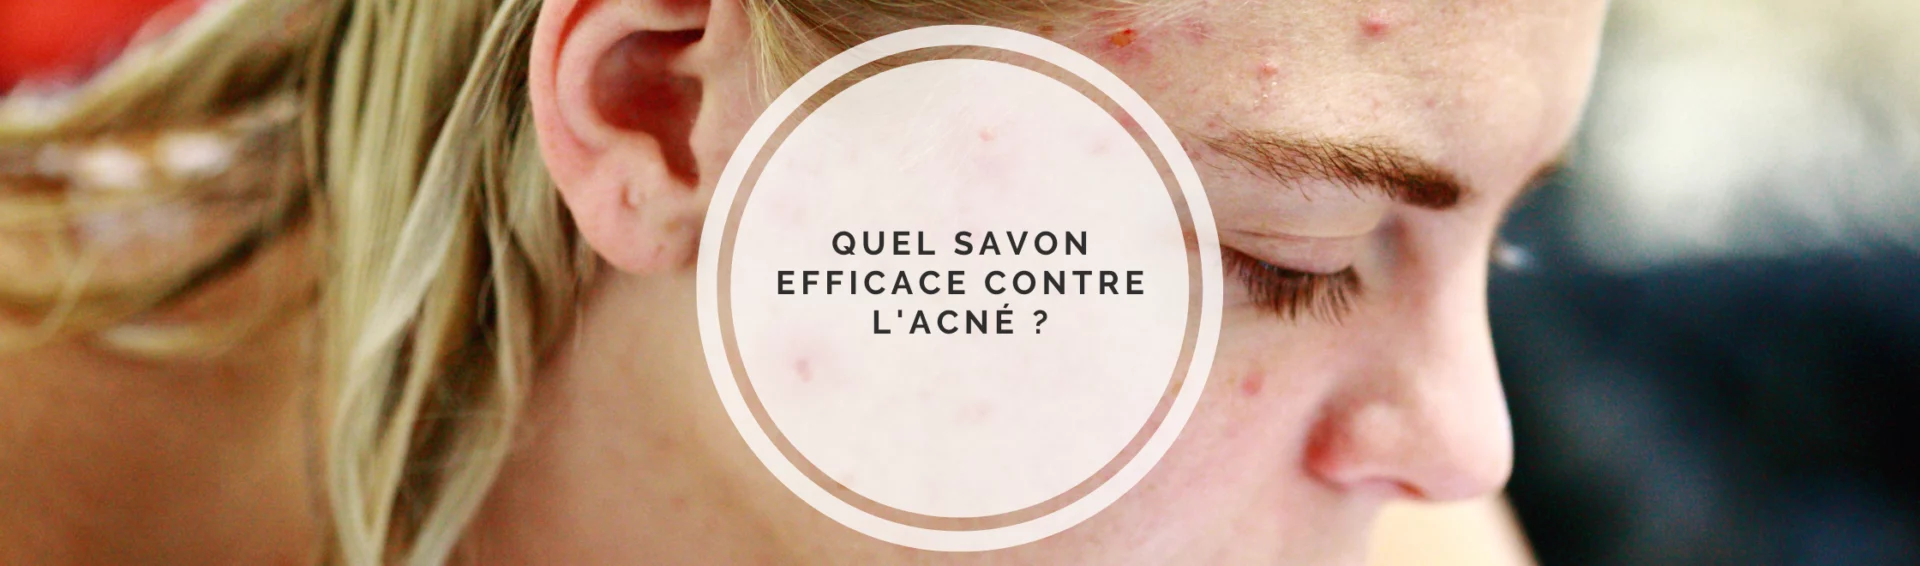 Quel savon efficace contre l'acné ?